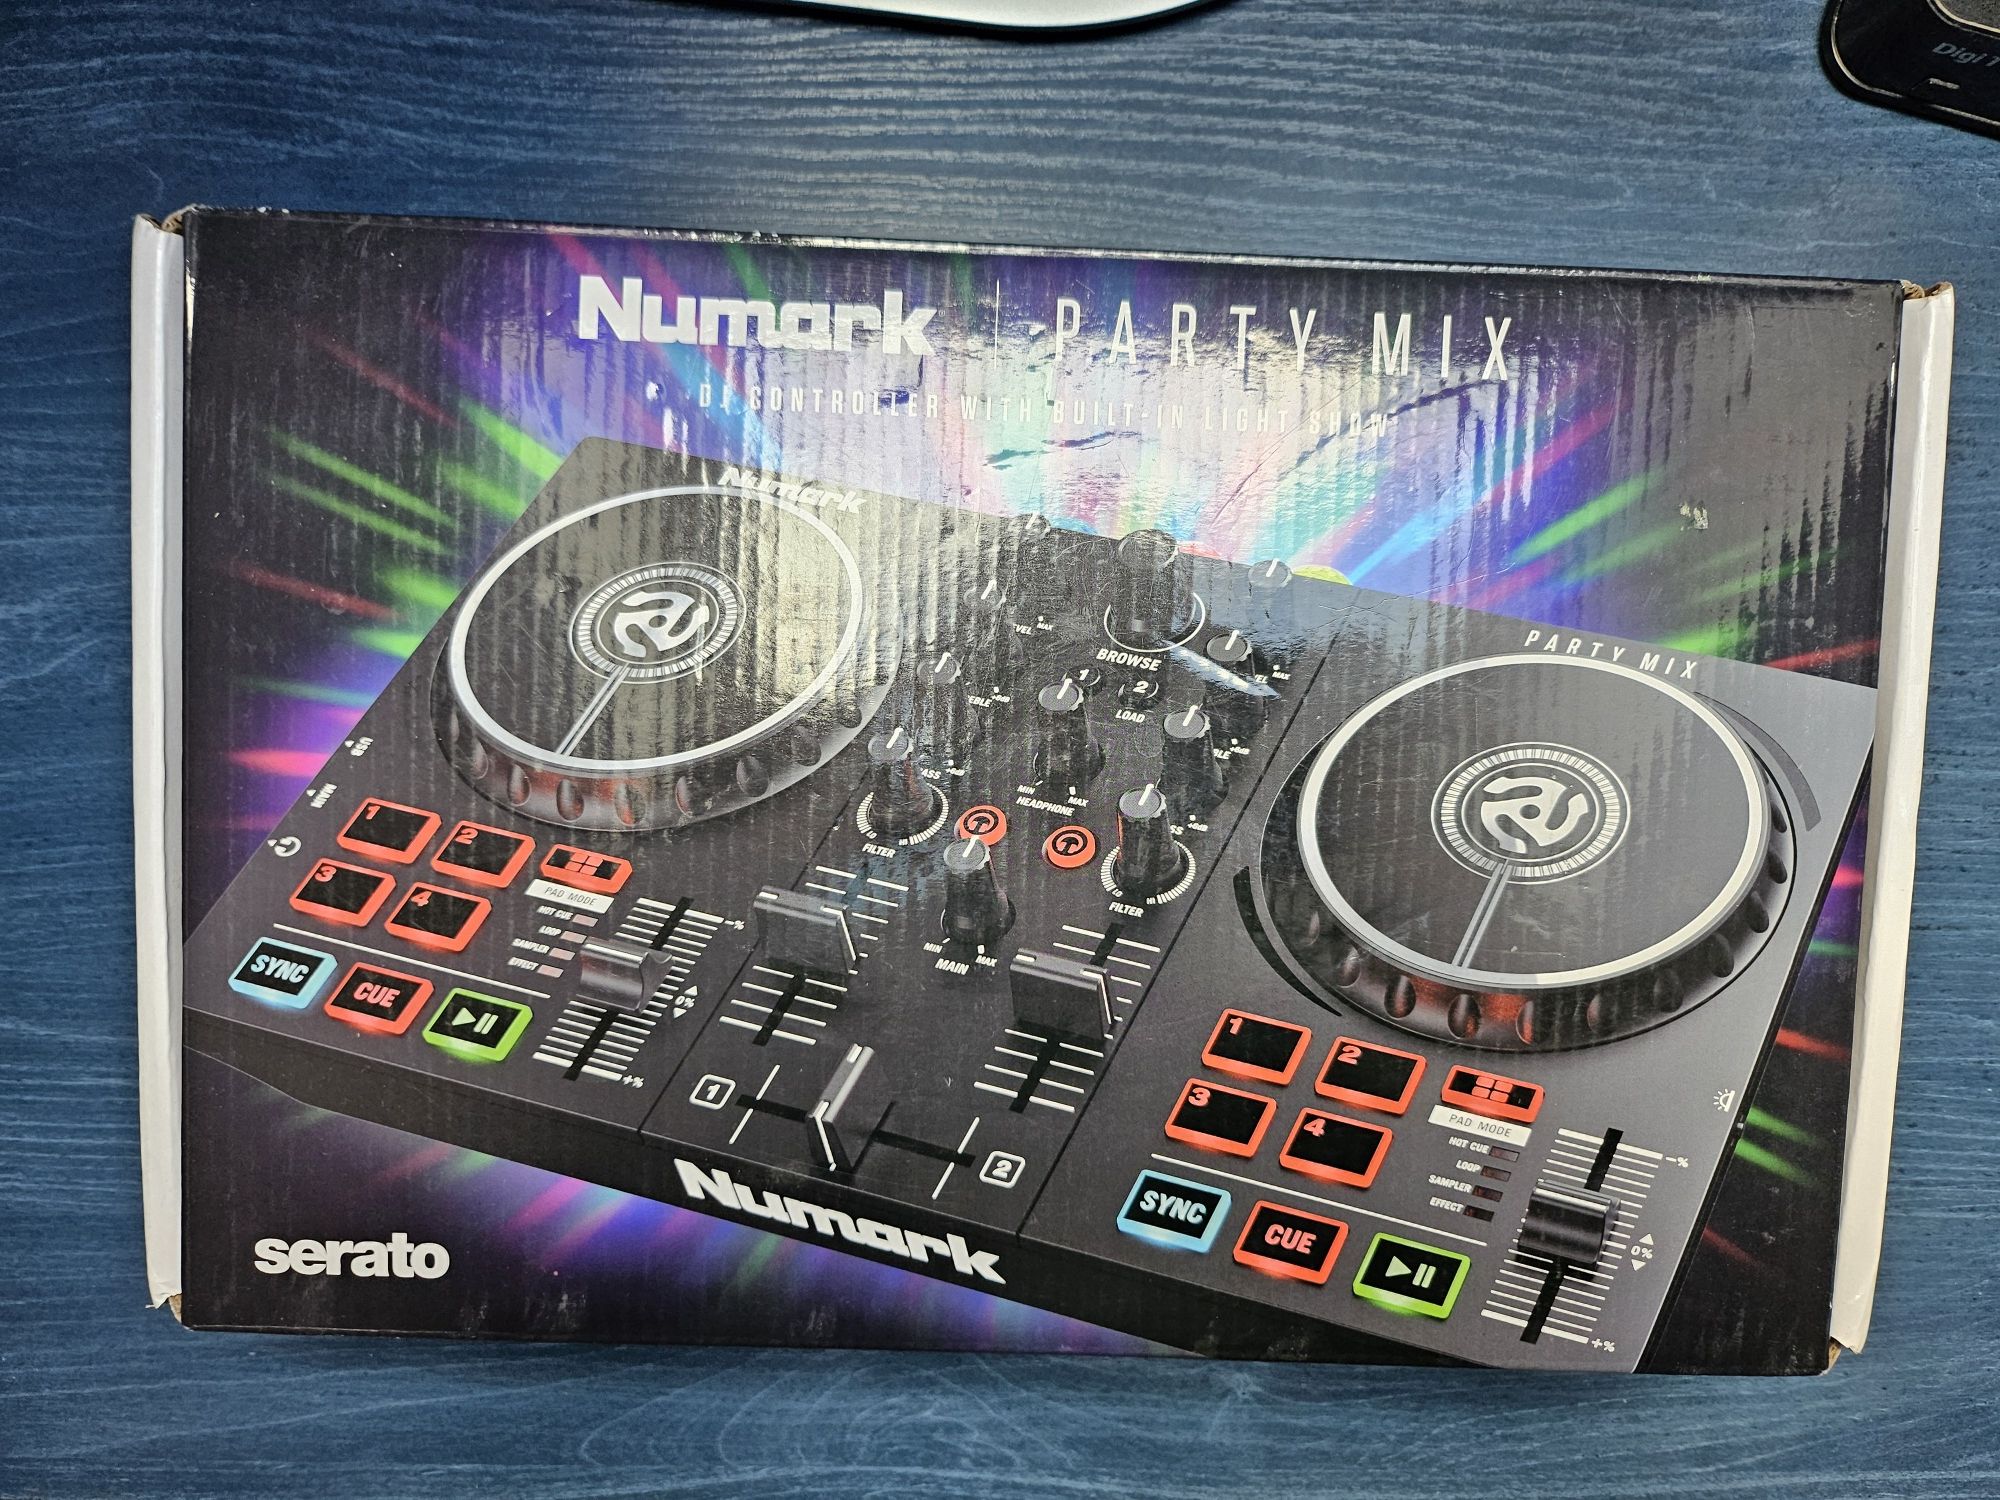 Numark party mix consola DJ